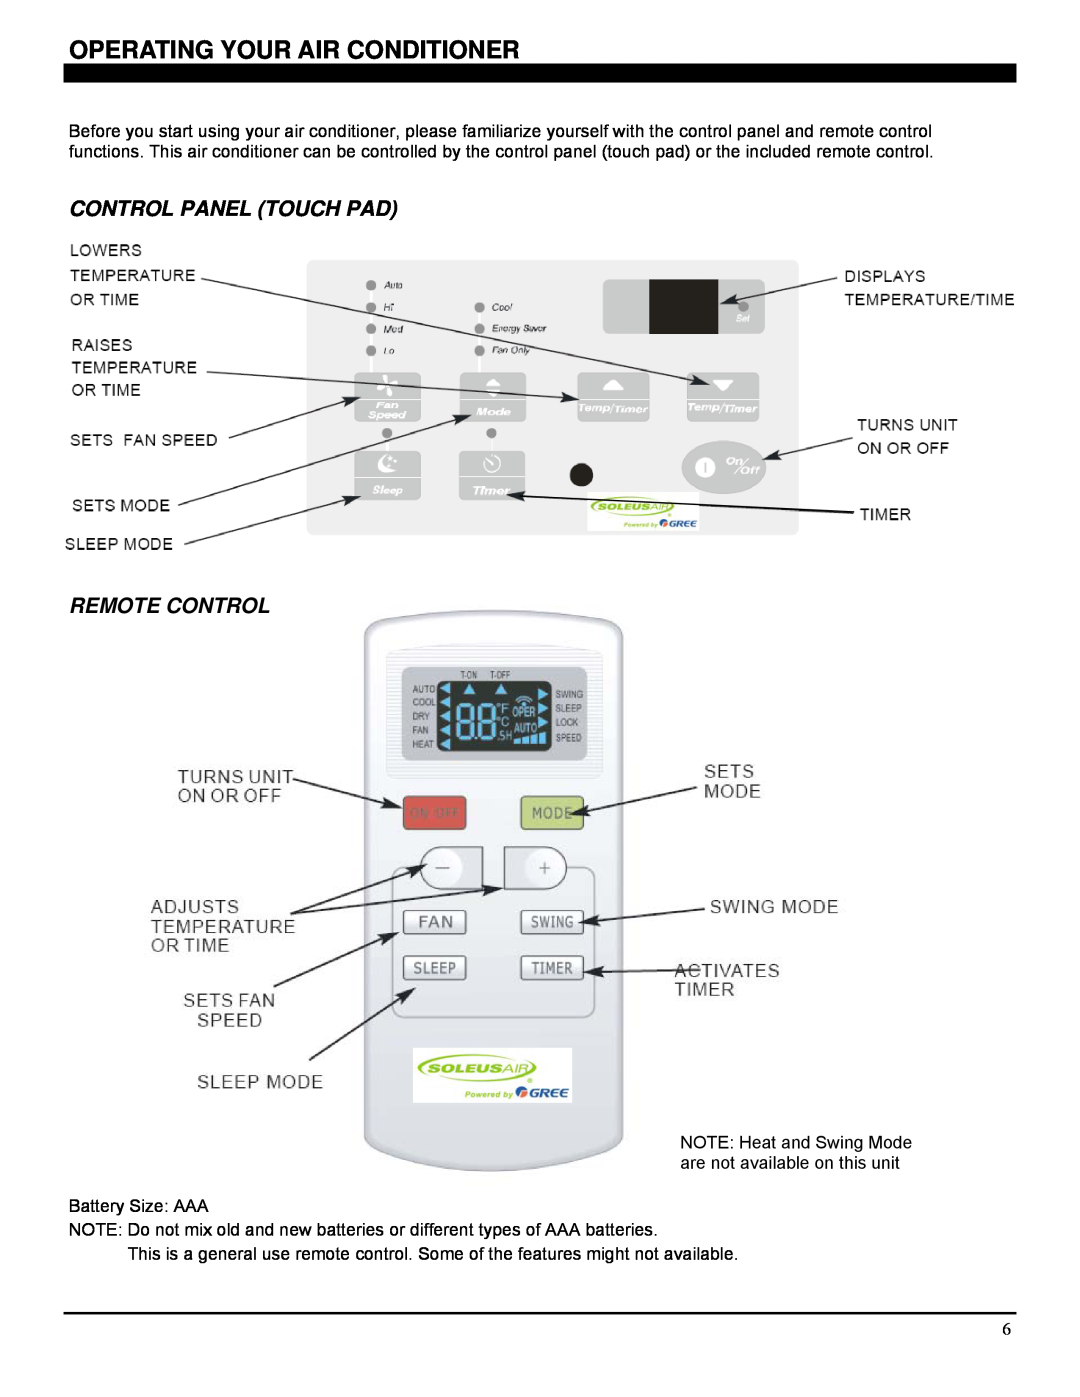 Soleus Air GB-TTW-14, GB-TTW-10ESE, GB-TTW-12ESE Operating Your Air Conditioner, Control Panel Touch Pad Remote Control 